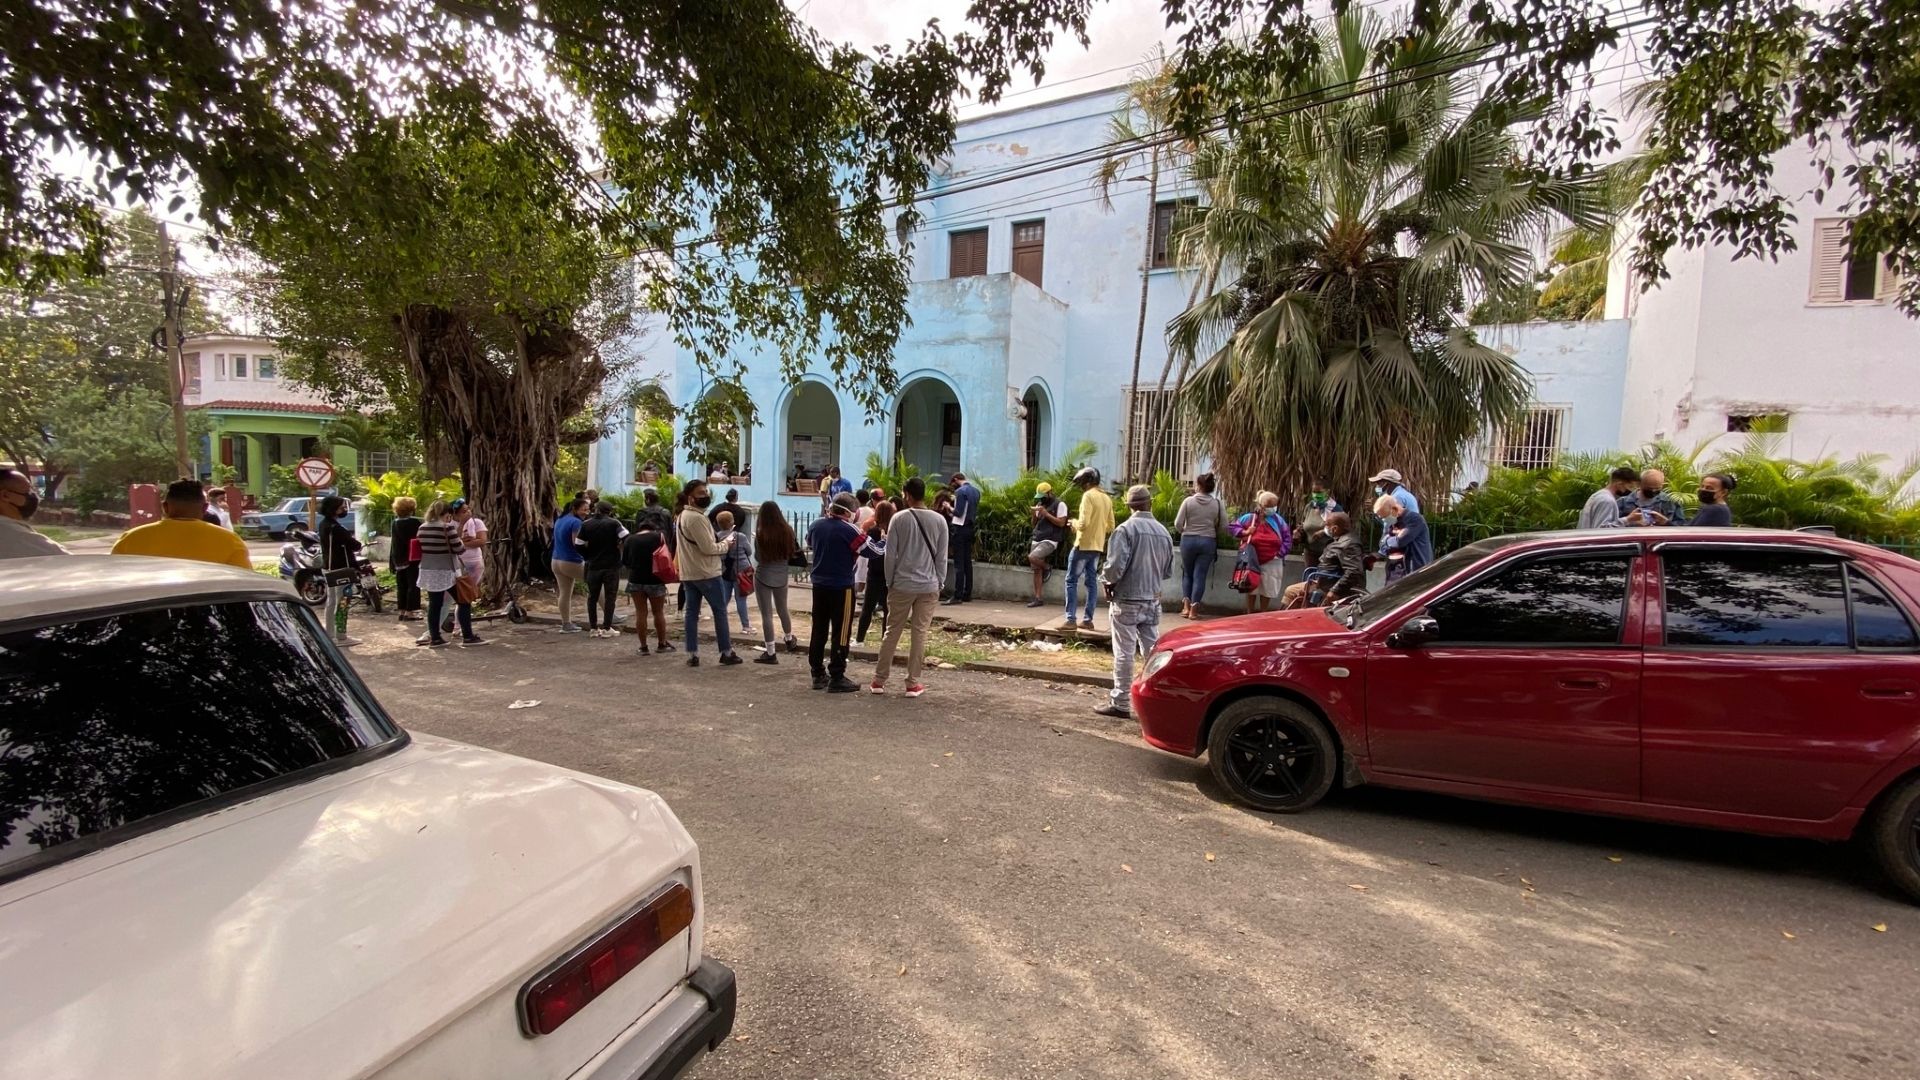 El usuario identificado en Twitter como jmfdez95 difundió la imagen donde se ve a varias personas haciendo una fila en el municipio Diez de Octubre